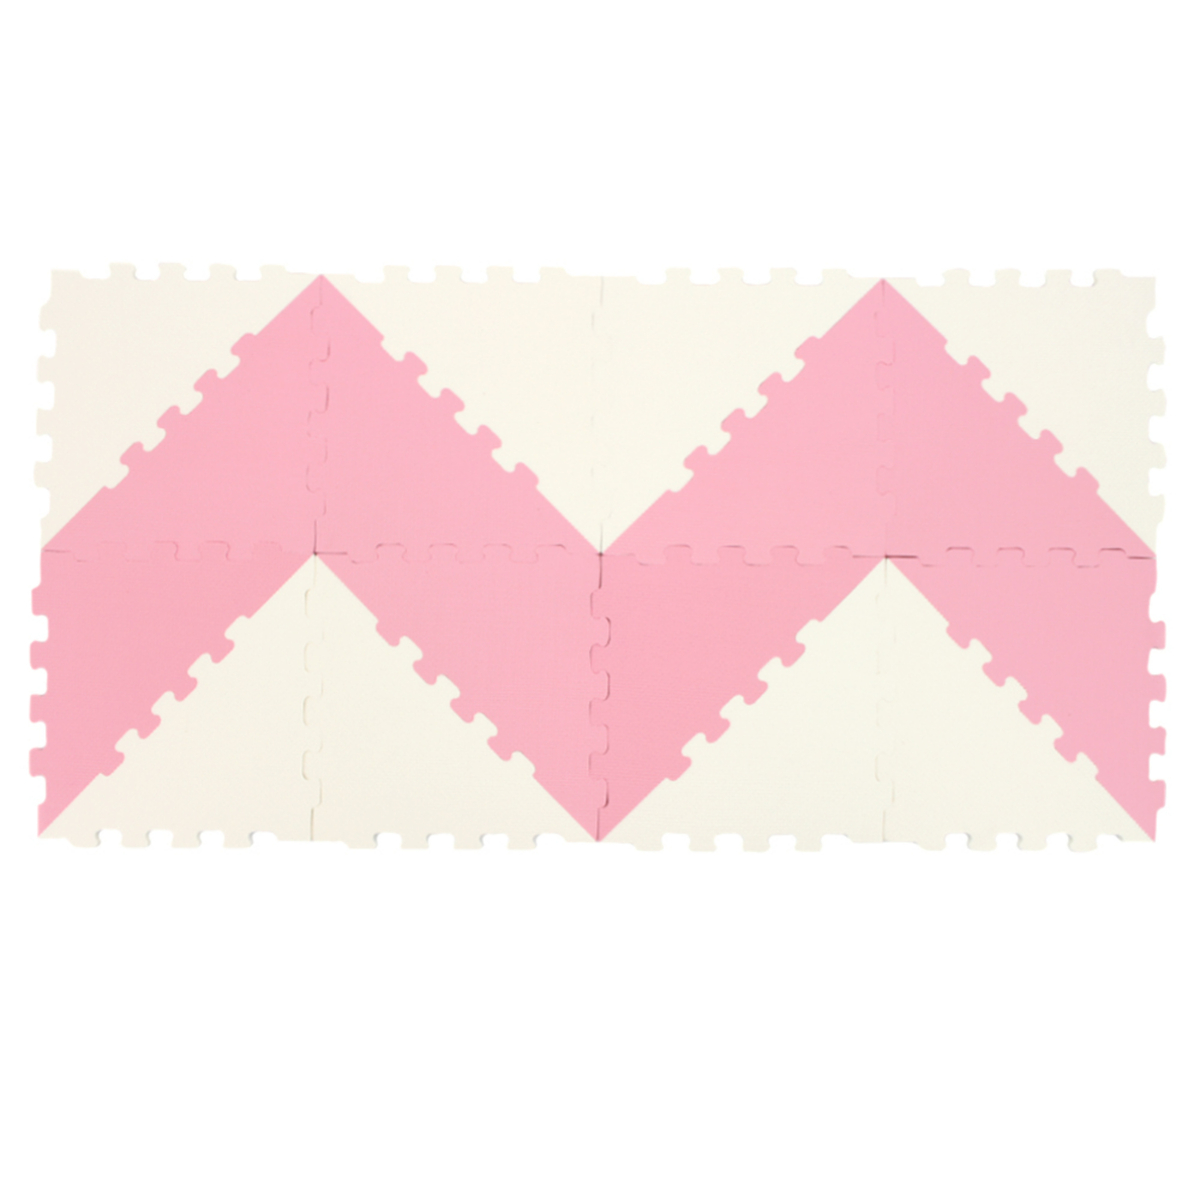 Sunta Puzzle Mat, 16 pcs, Pink/White, 1018B3-B PK/WHT